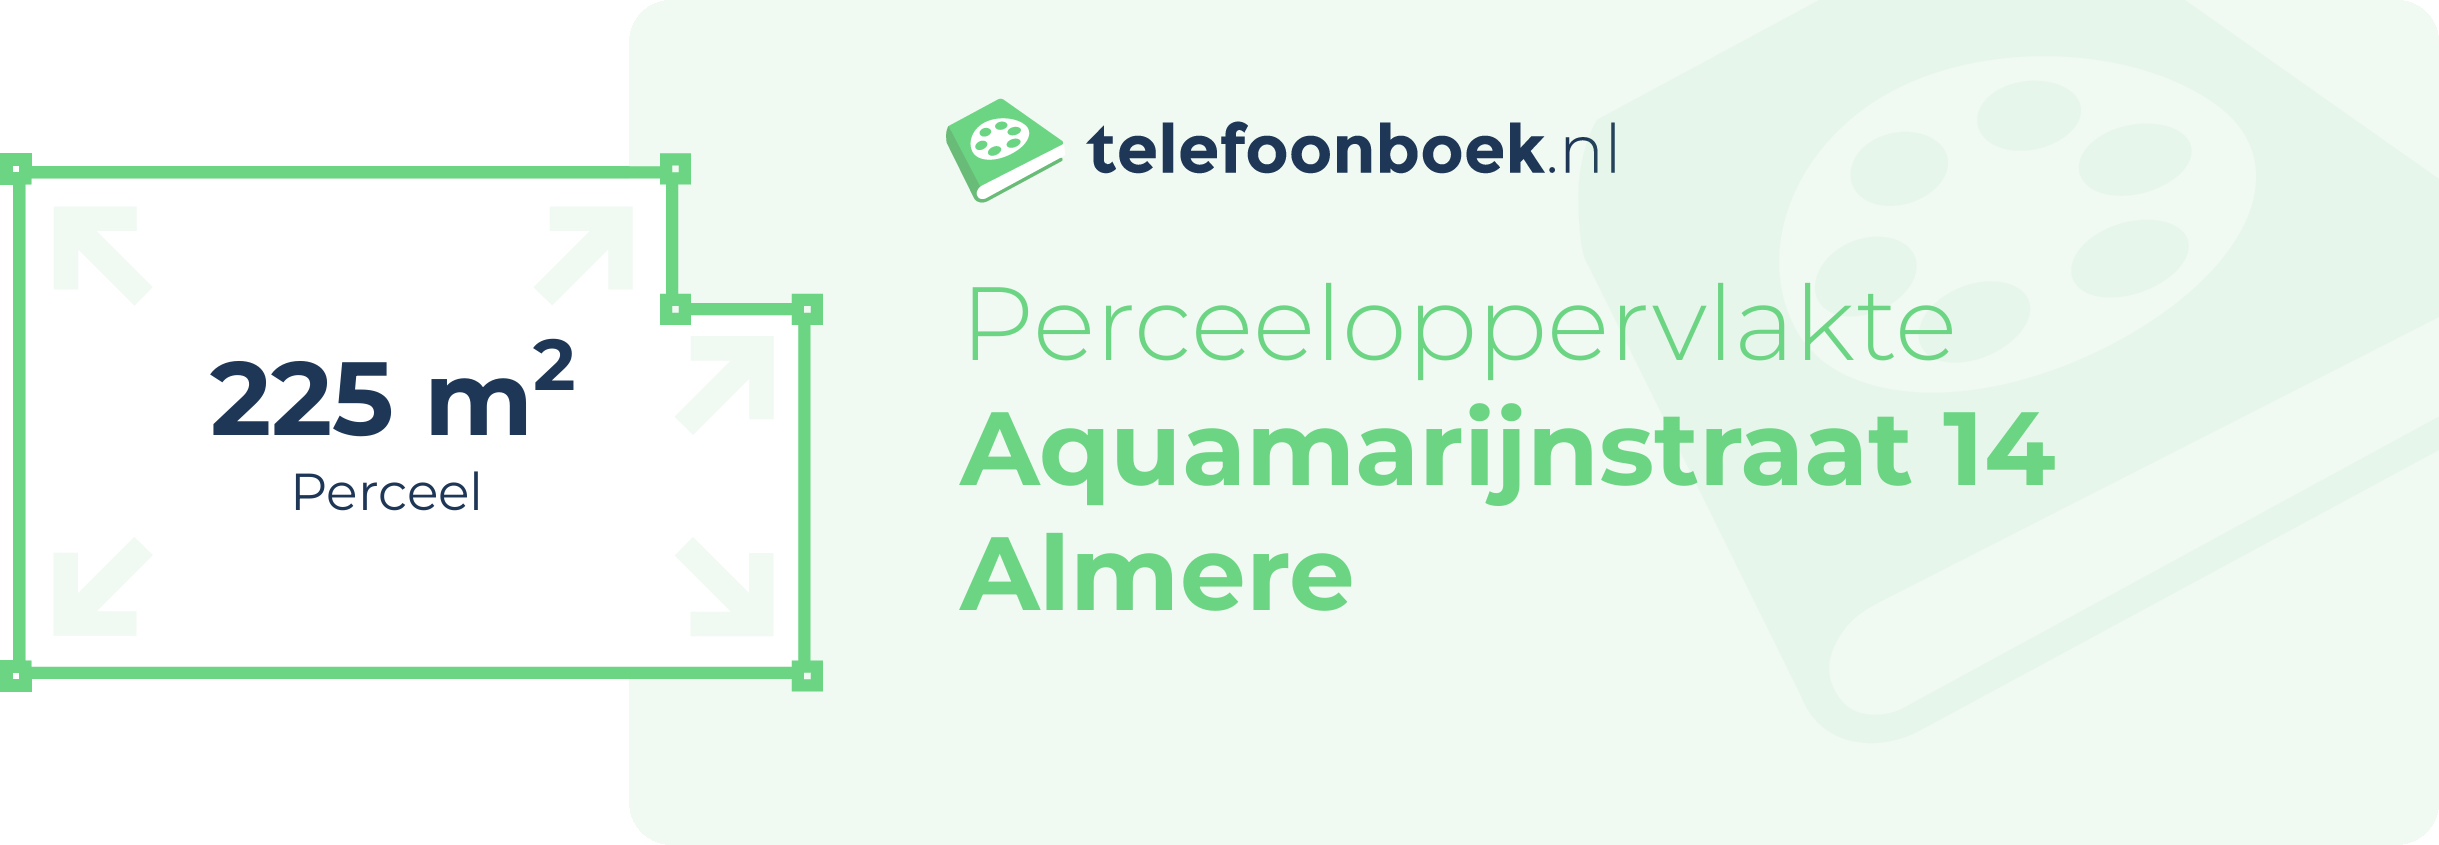 Perceeloppervlakte Aquamarijnstraat 14 Almere